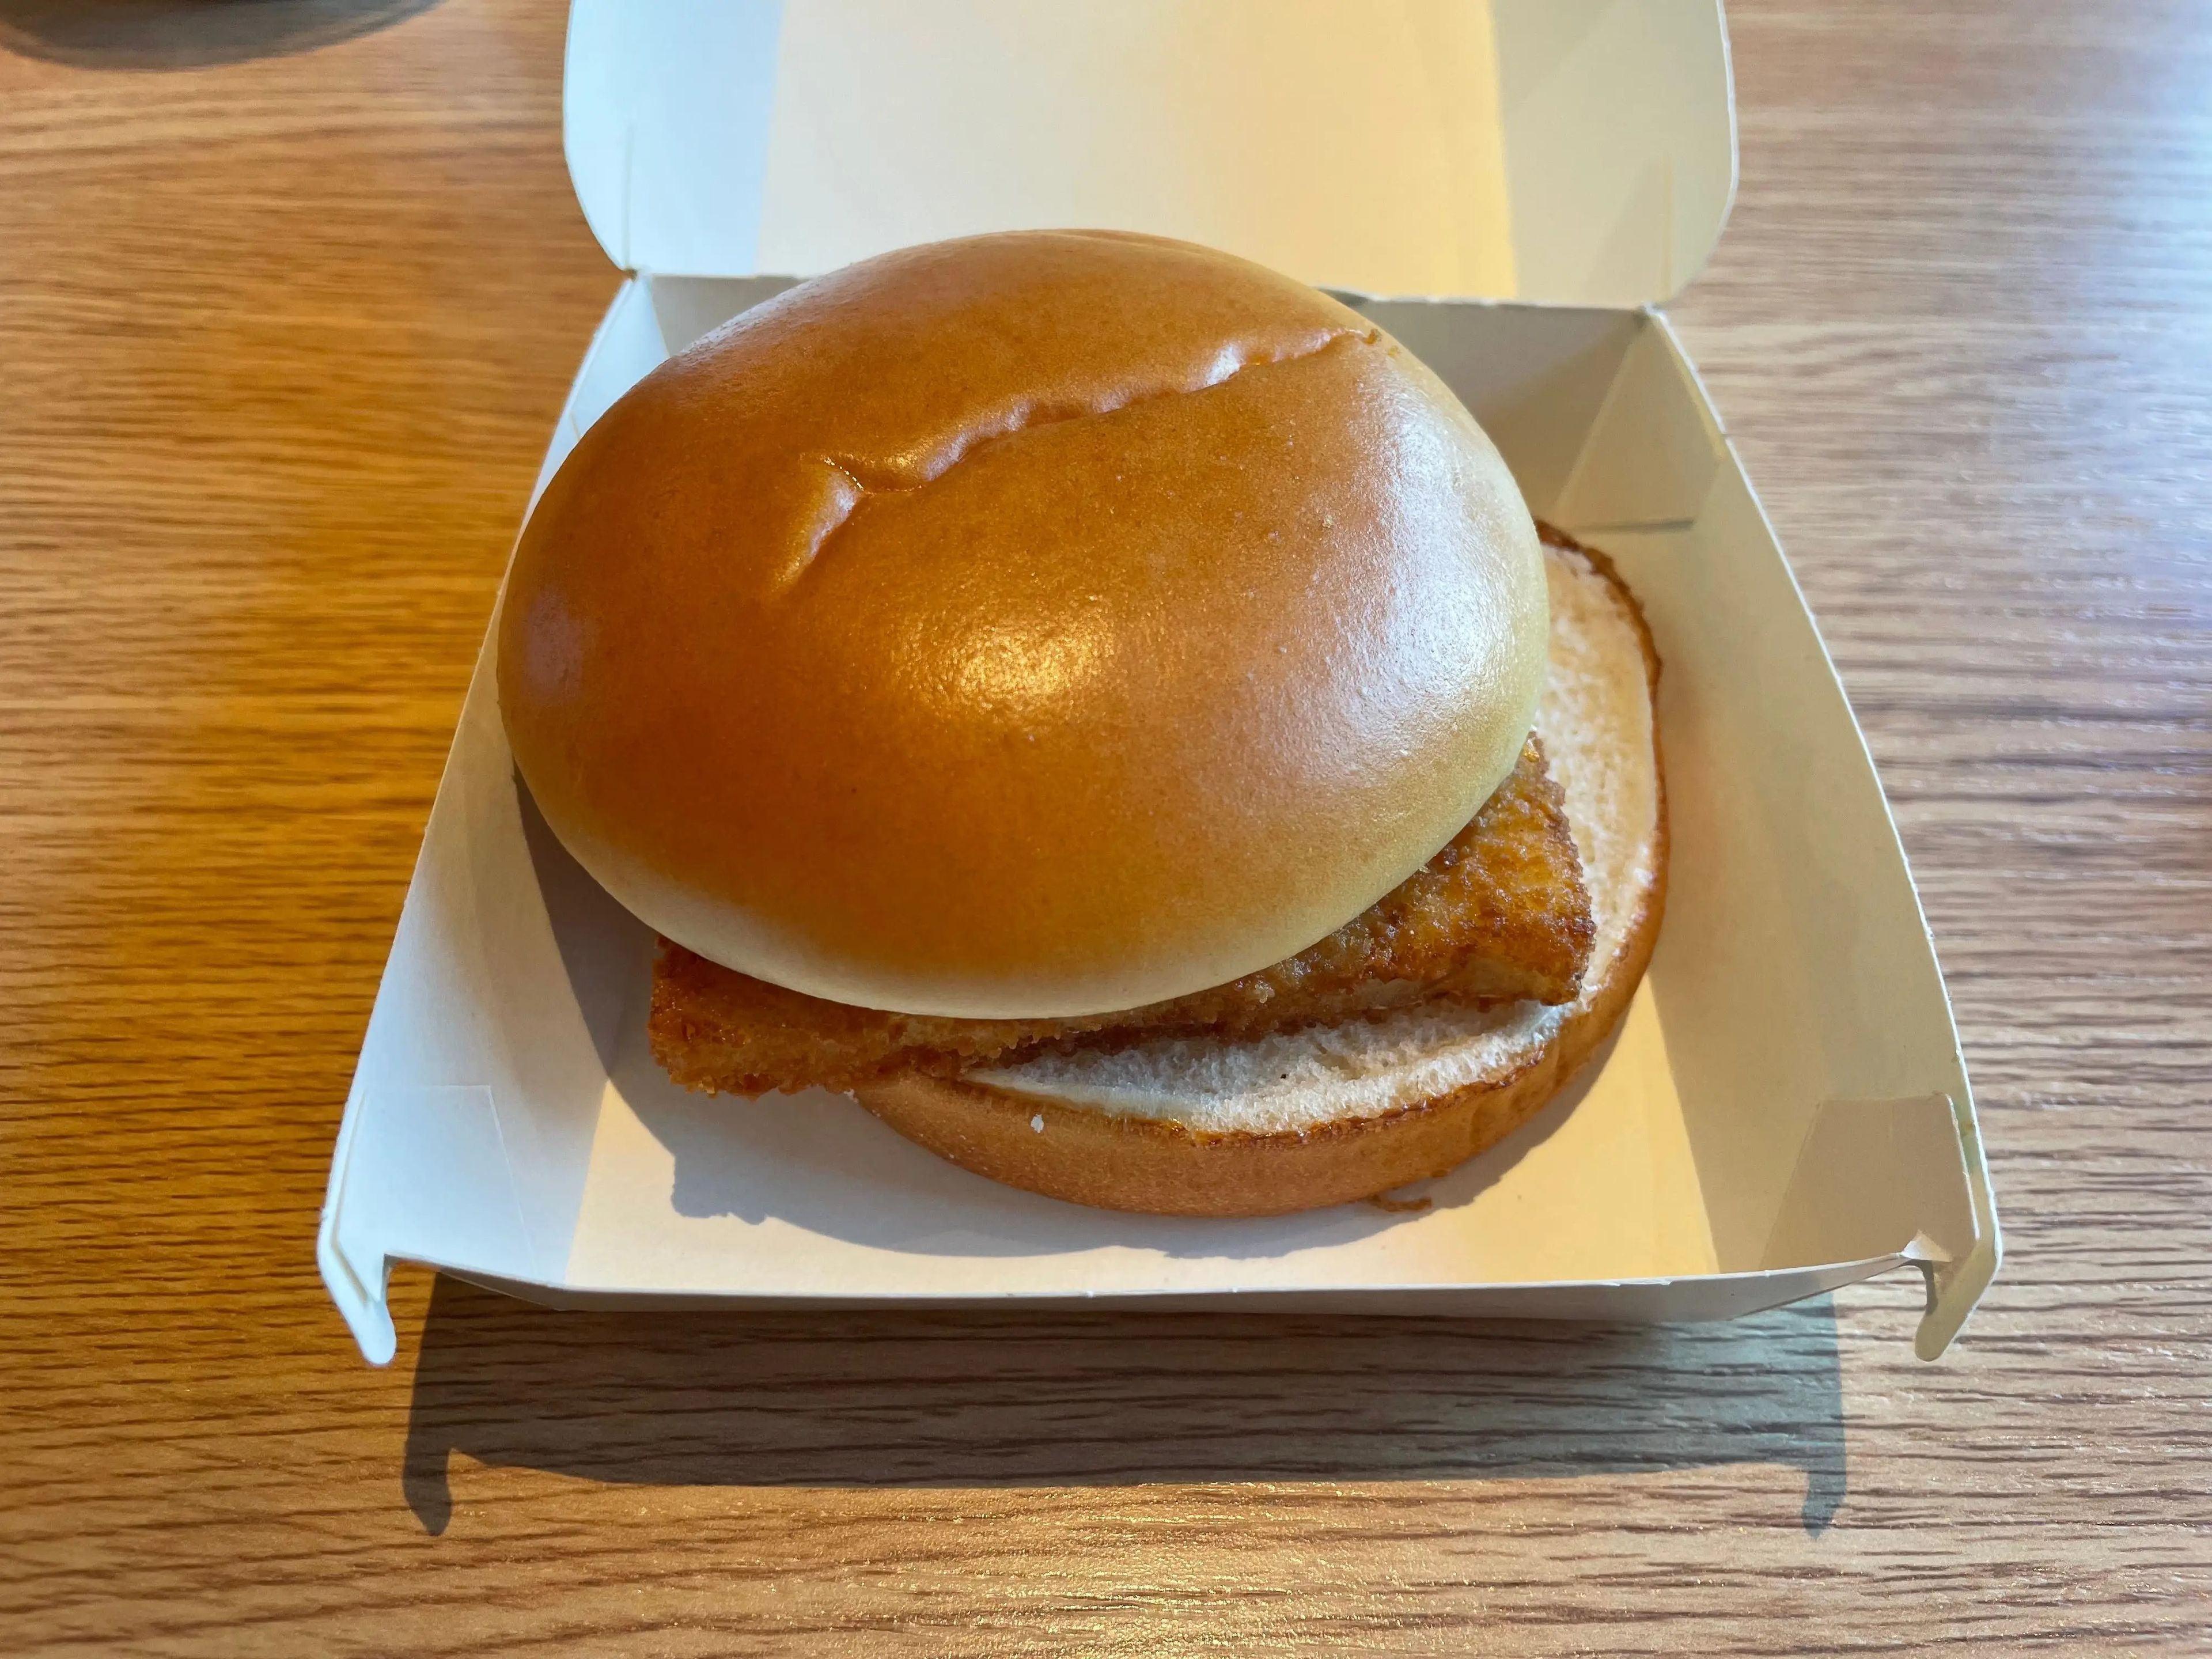 Así luce la hamburguesa de pescado del nuevo McDonald's.